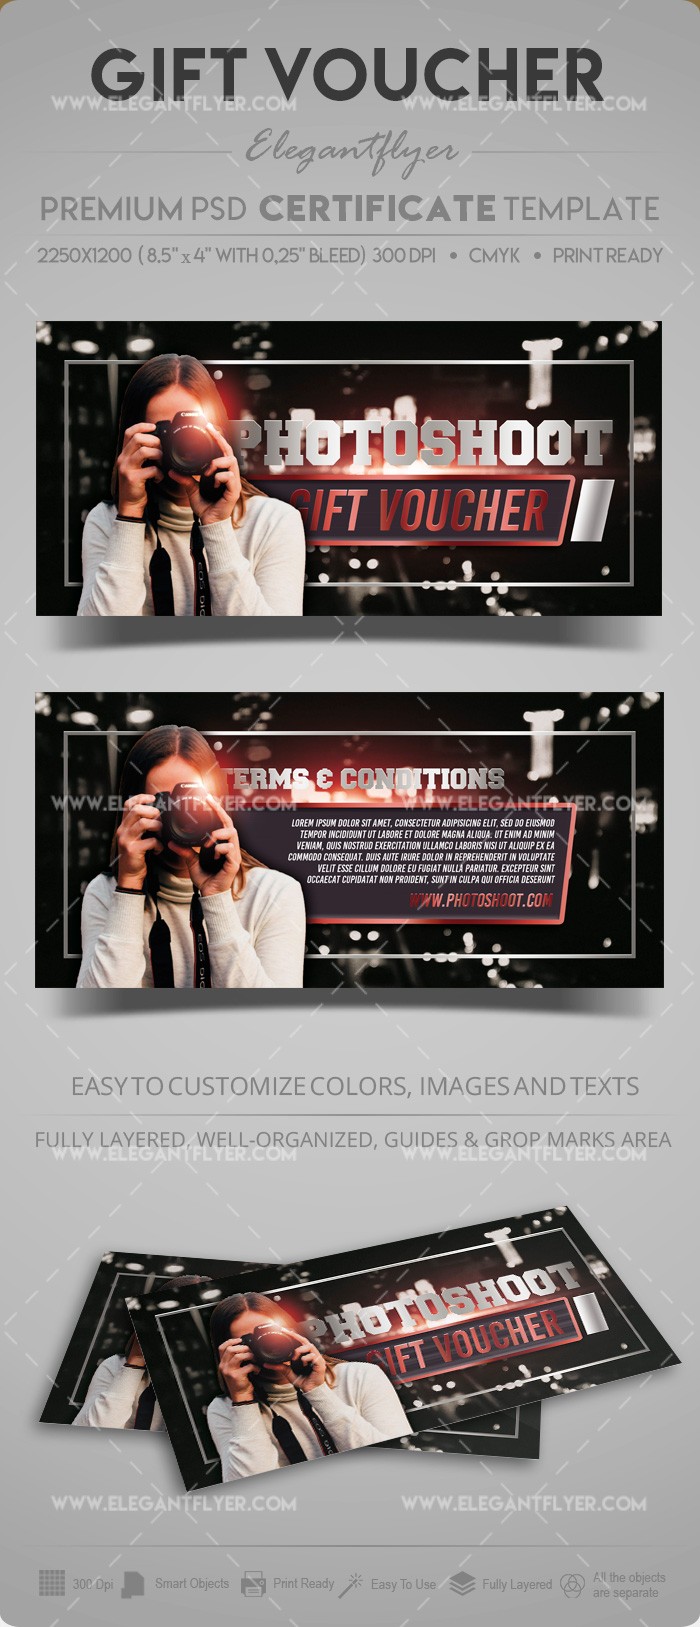 Photoshoot Gift Voucher by ElegantFlyer